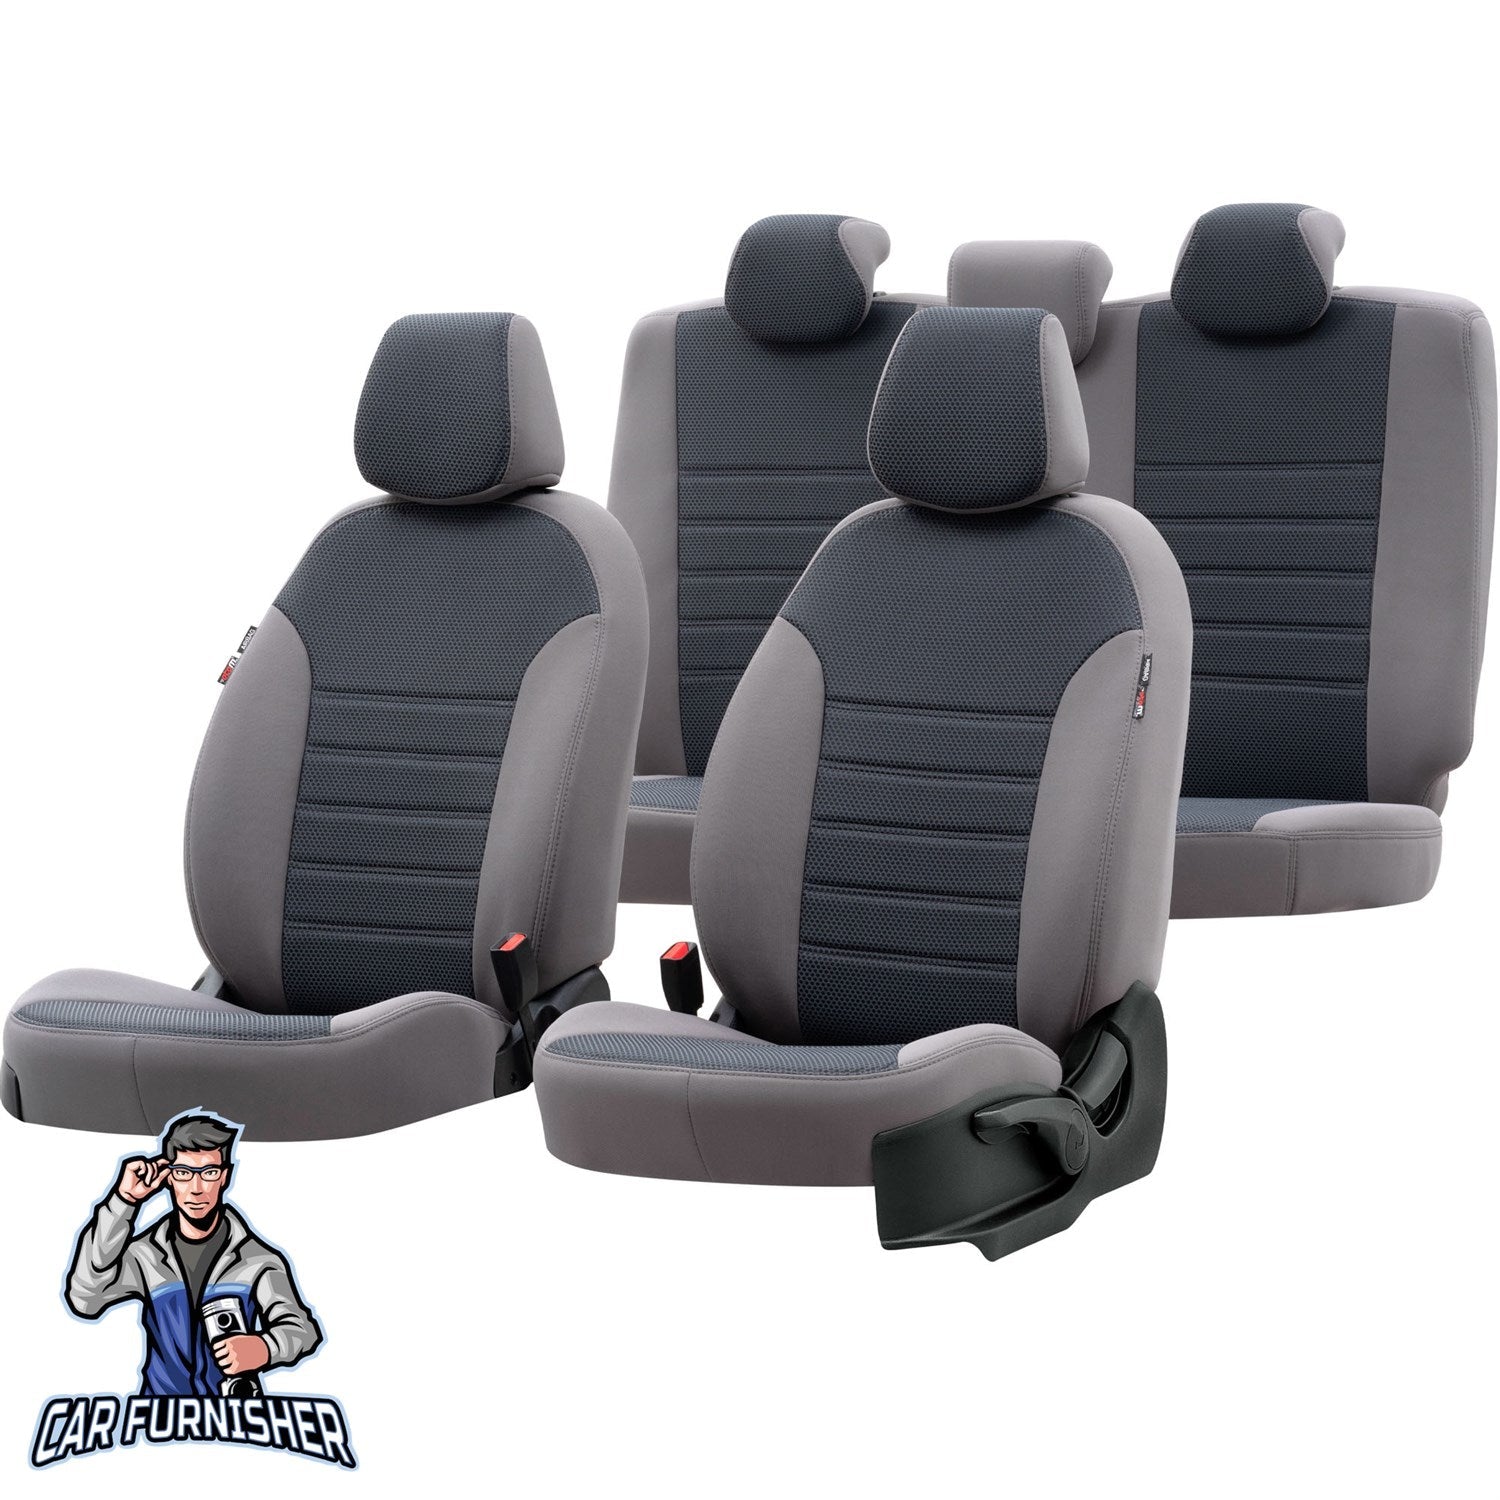 Bmw X5 Car Seat Cover 2000-2006 E53 Custom Original Design Smoked Full Set (5 Seats + Handrest) Fabric